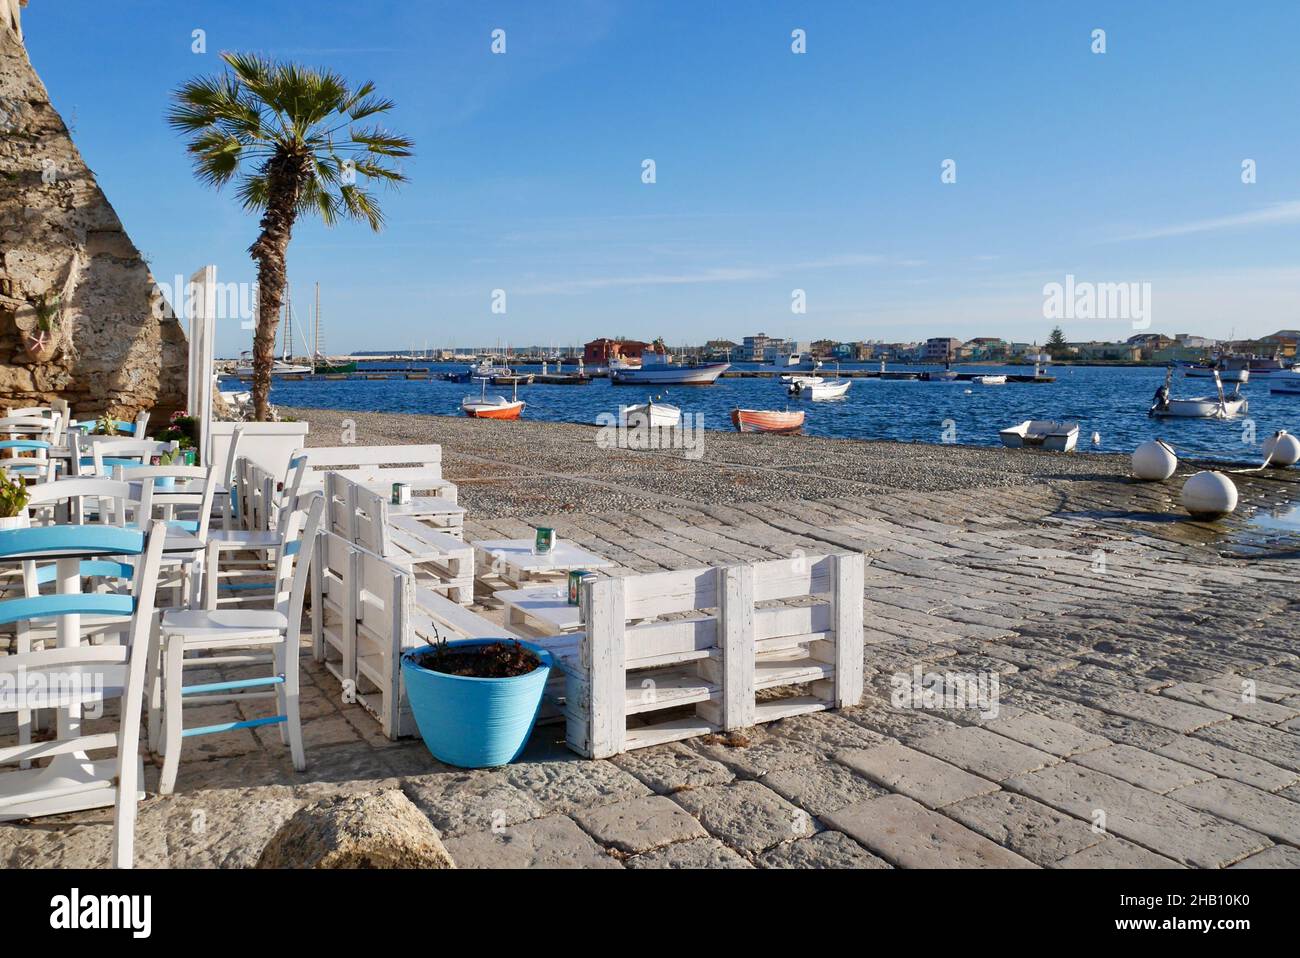 Encantadora zona de estar al aire libre con preciosas vistas al mar y a los barcos de pesca. Marzamemi, Provincia de Siracusa, Sicilia. Foto de stock